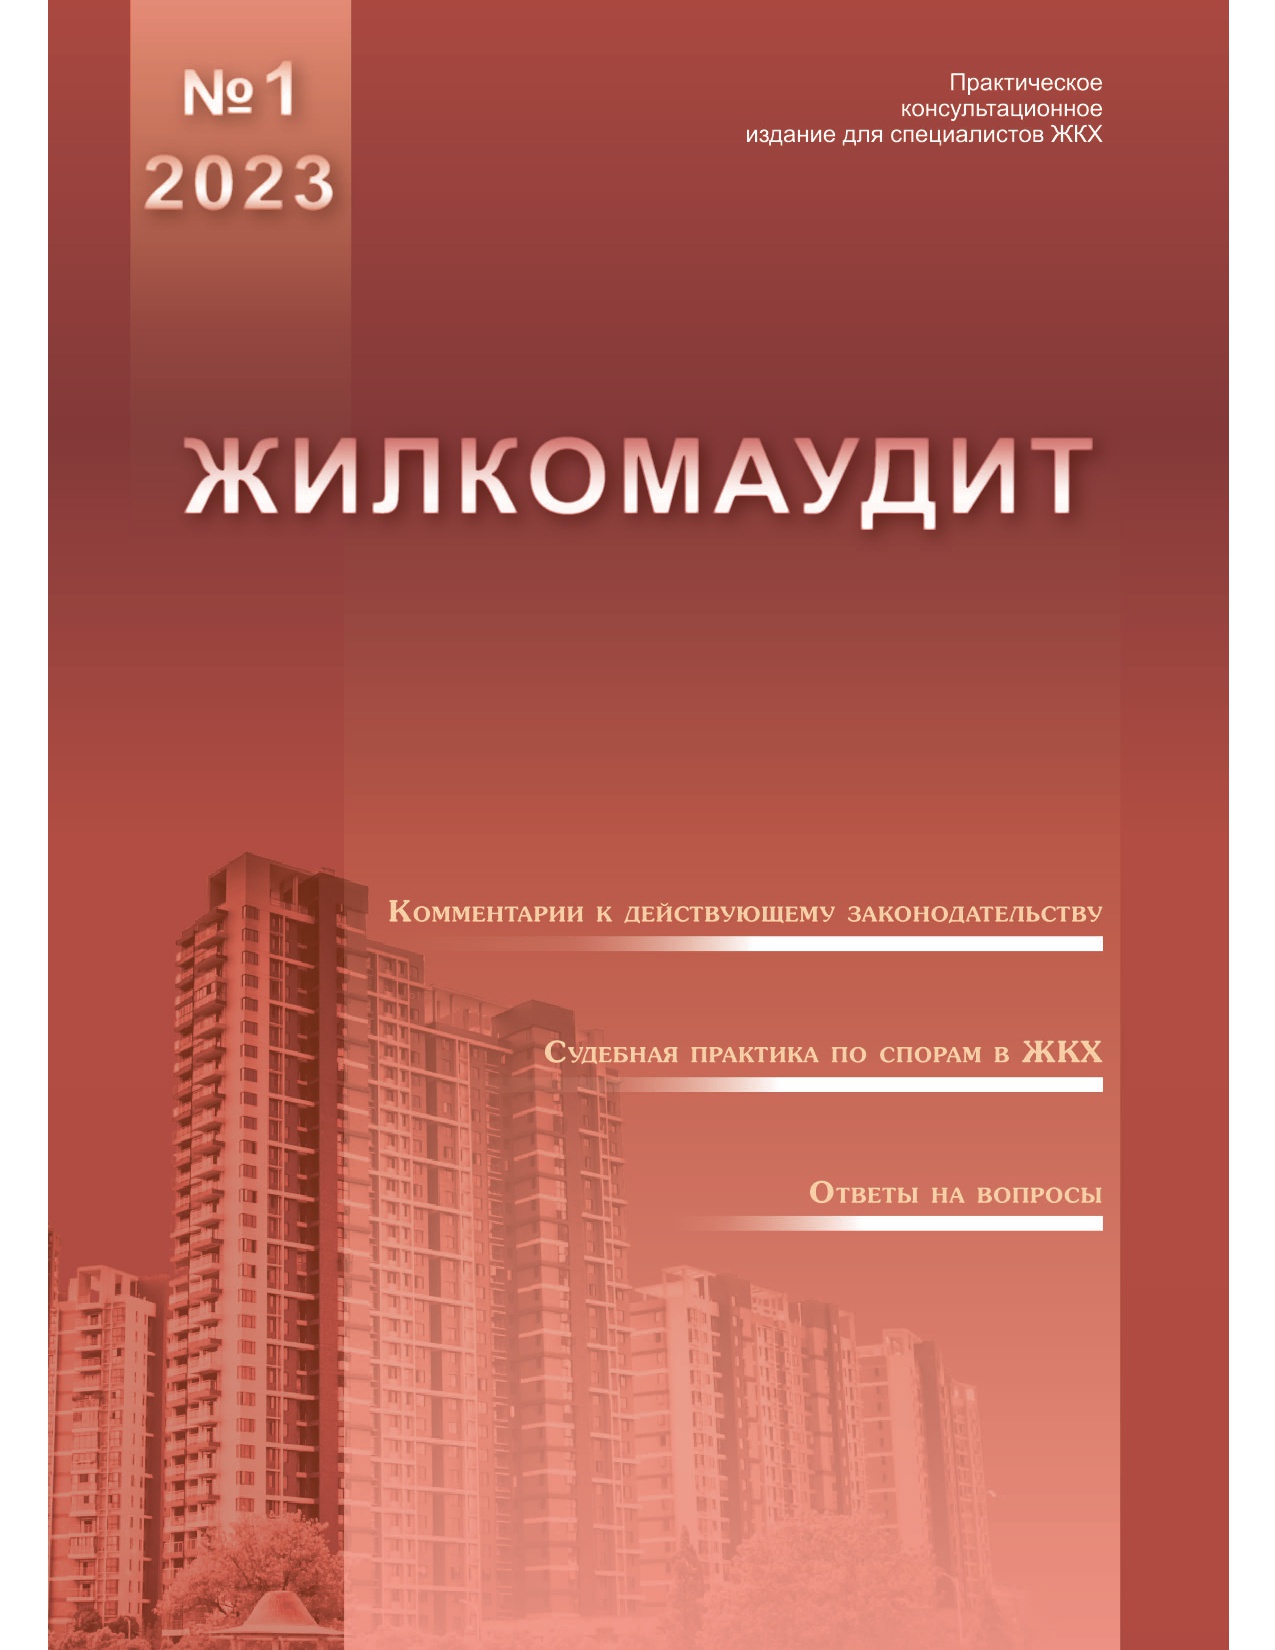 Журнал "Жилкомаудит"№1-2023